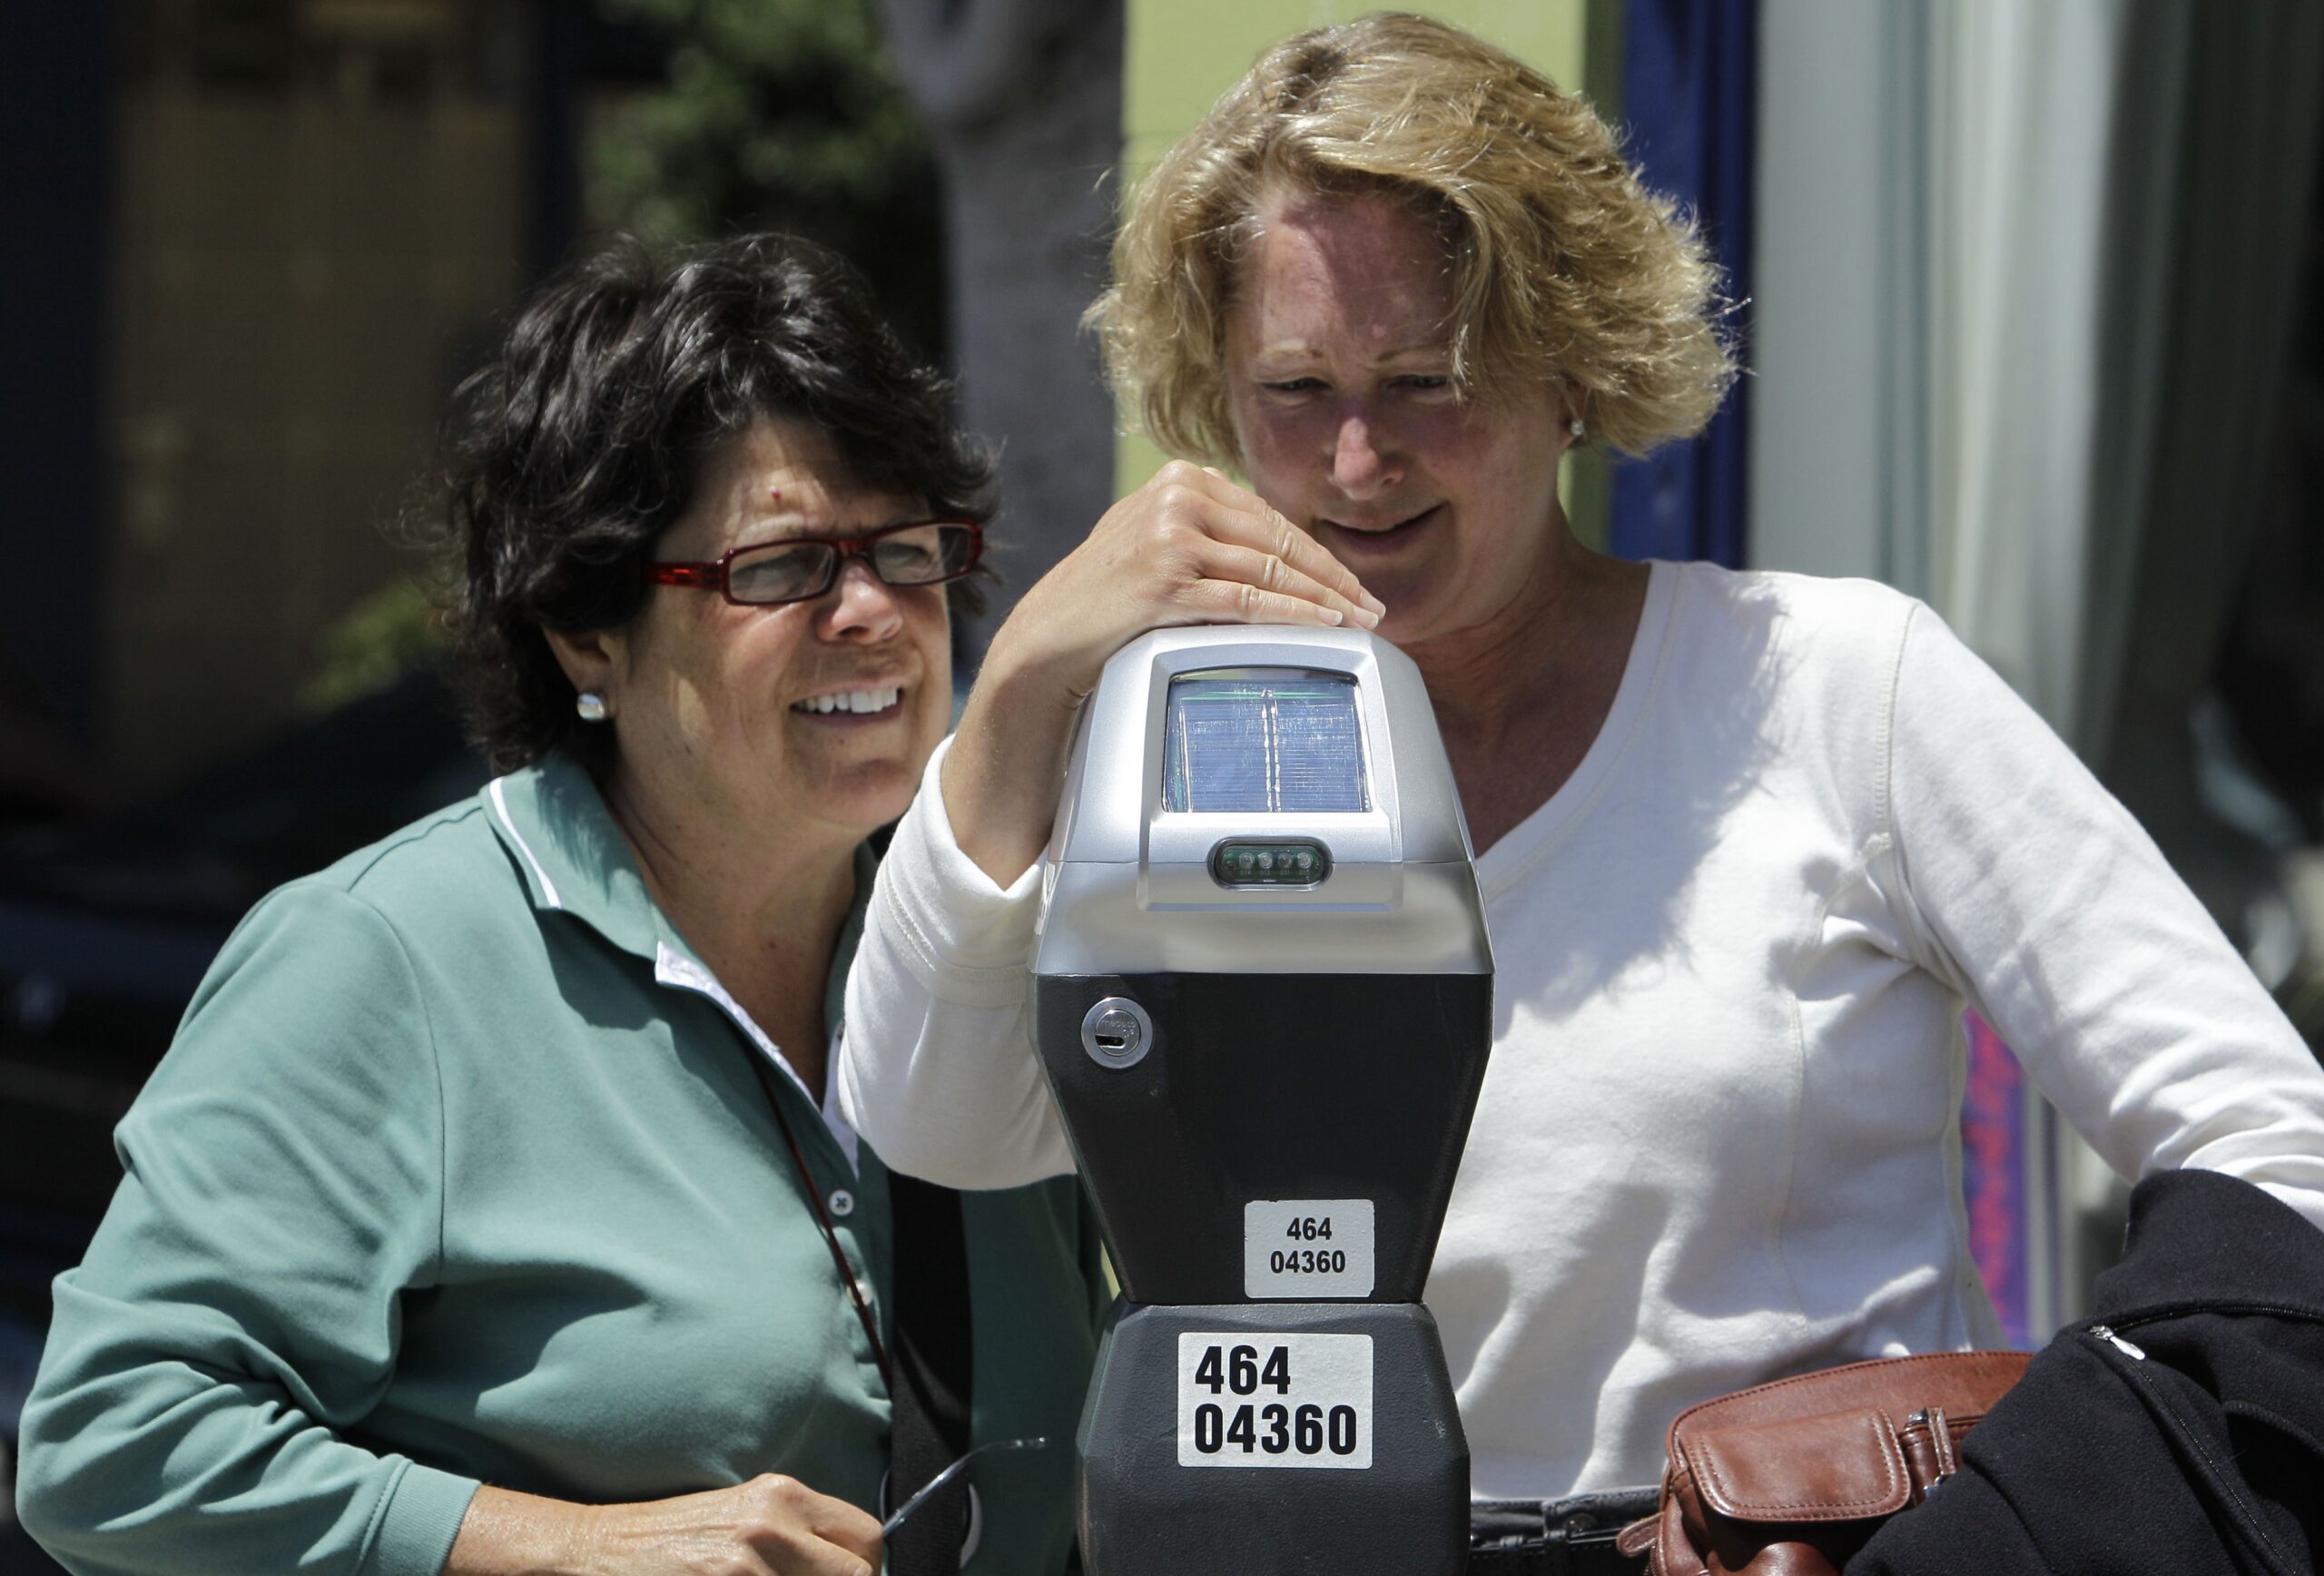 Women at parking meter